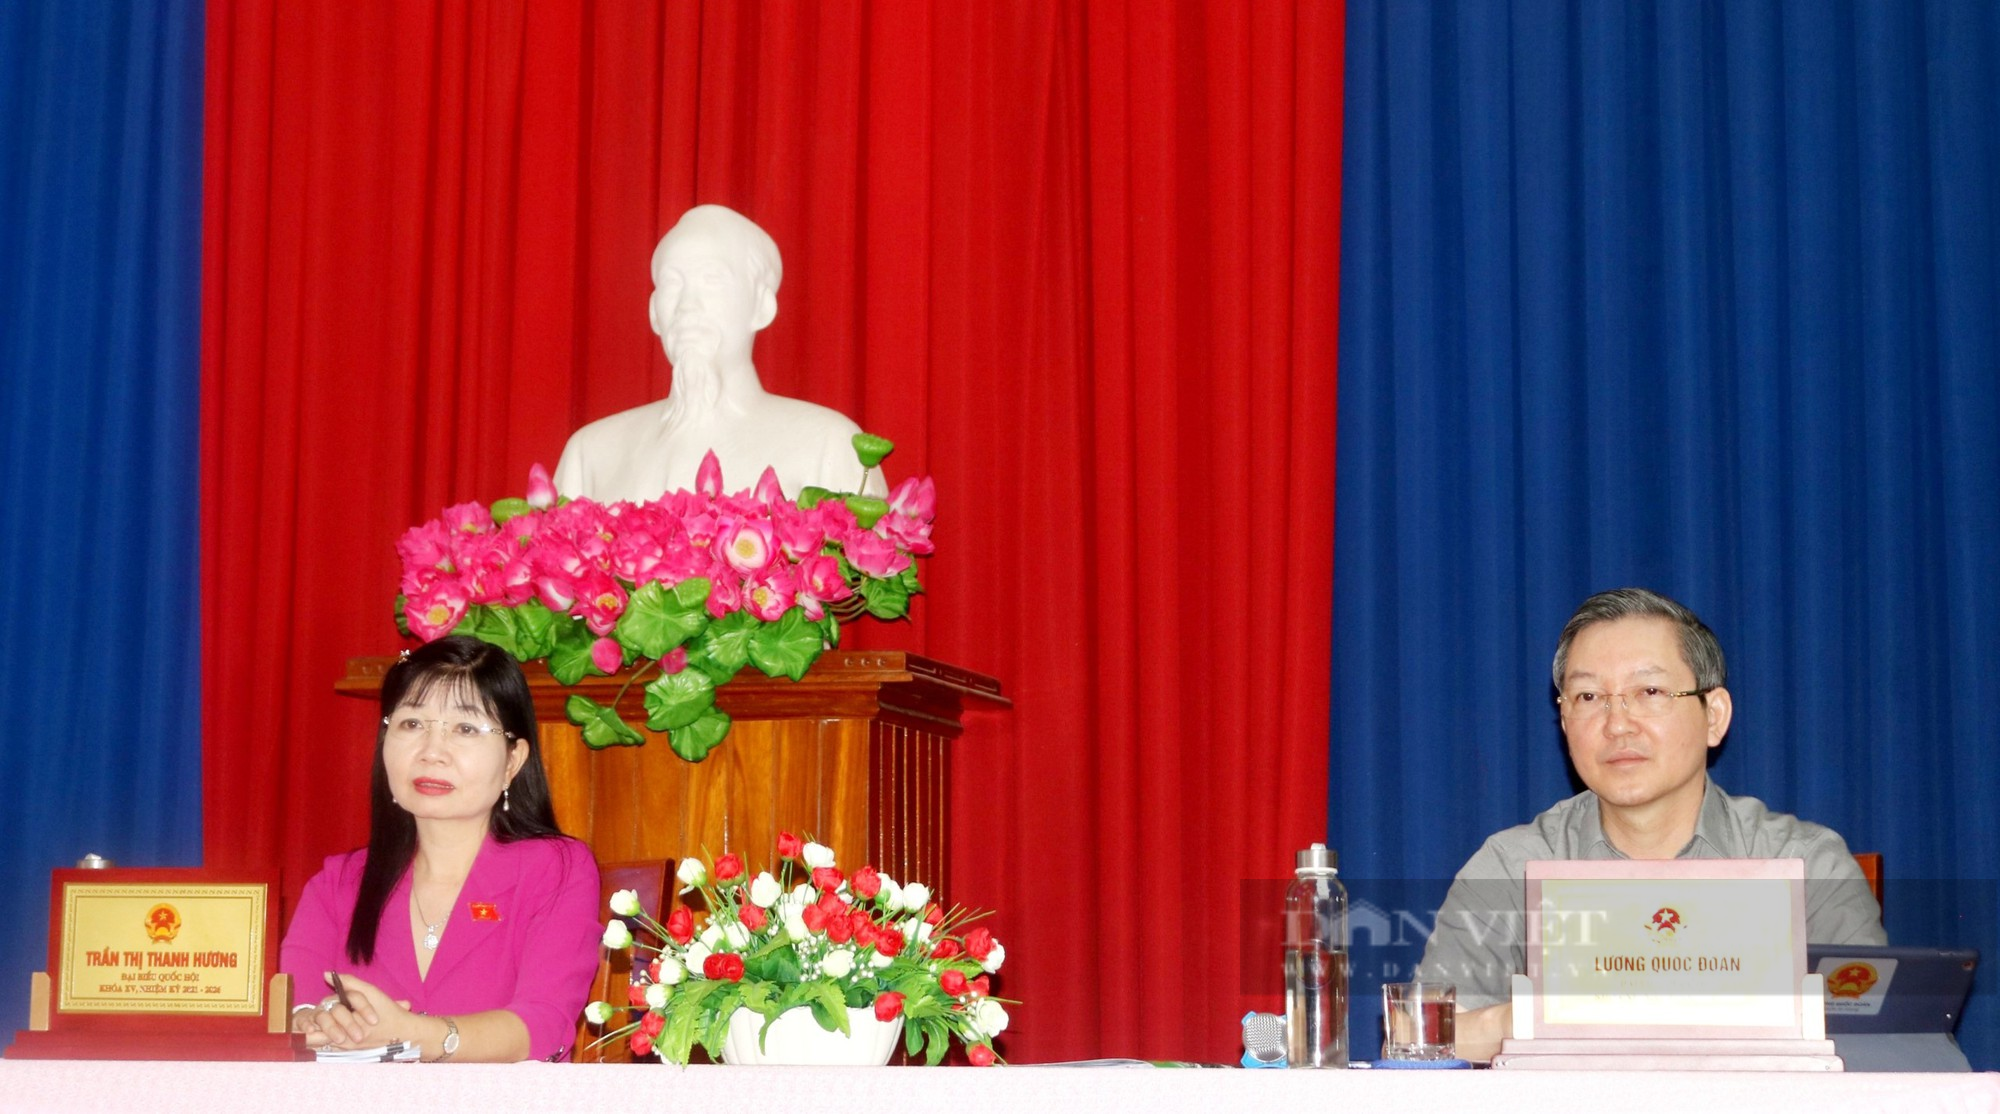 Chủ tịch Hội NDVN và đoàn đại biểu Quốc hội tỉnh An Giang tiếp xúc cử tri thuyện Chợ Mới - Ảnh 1.